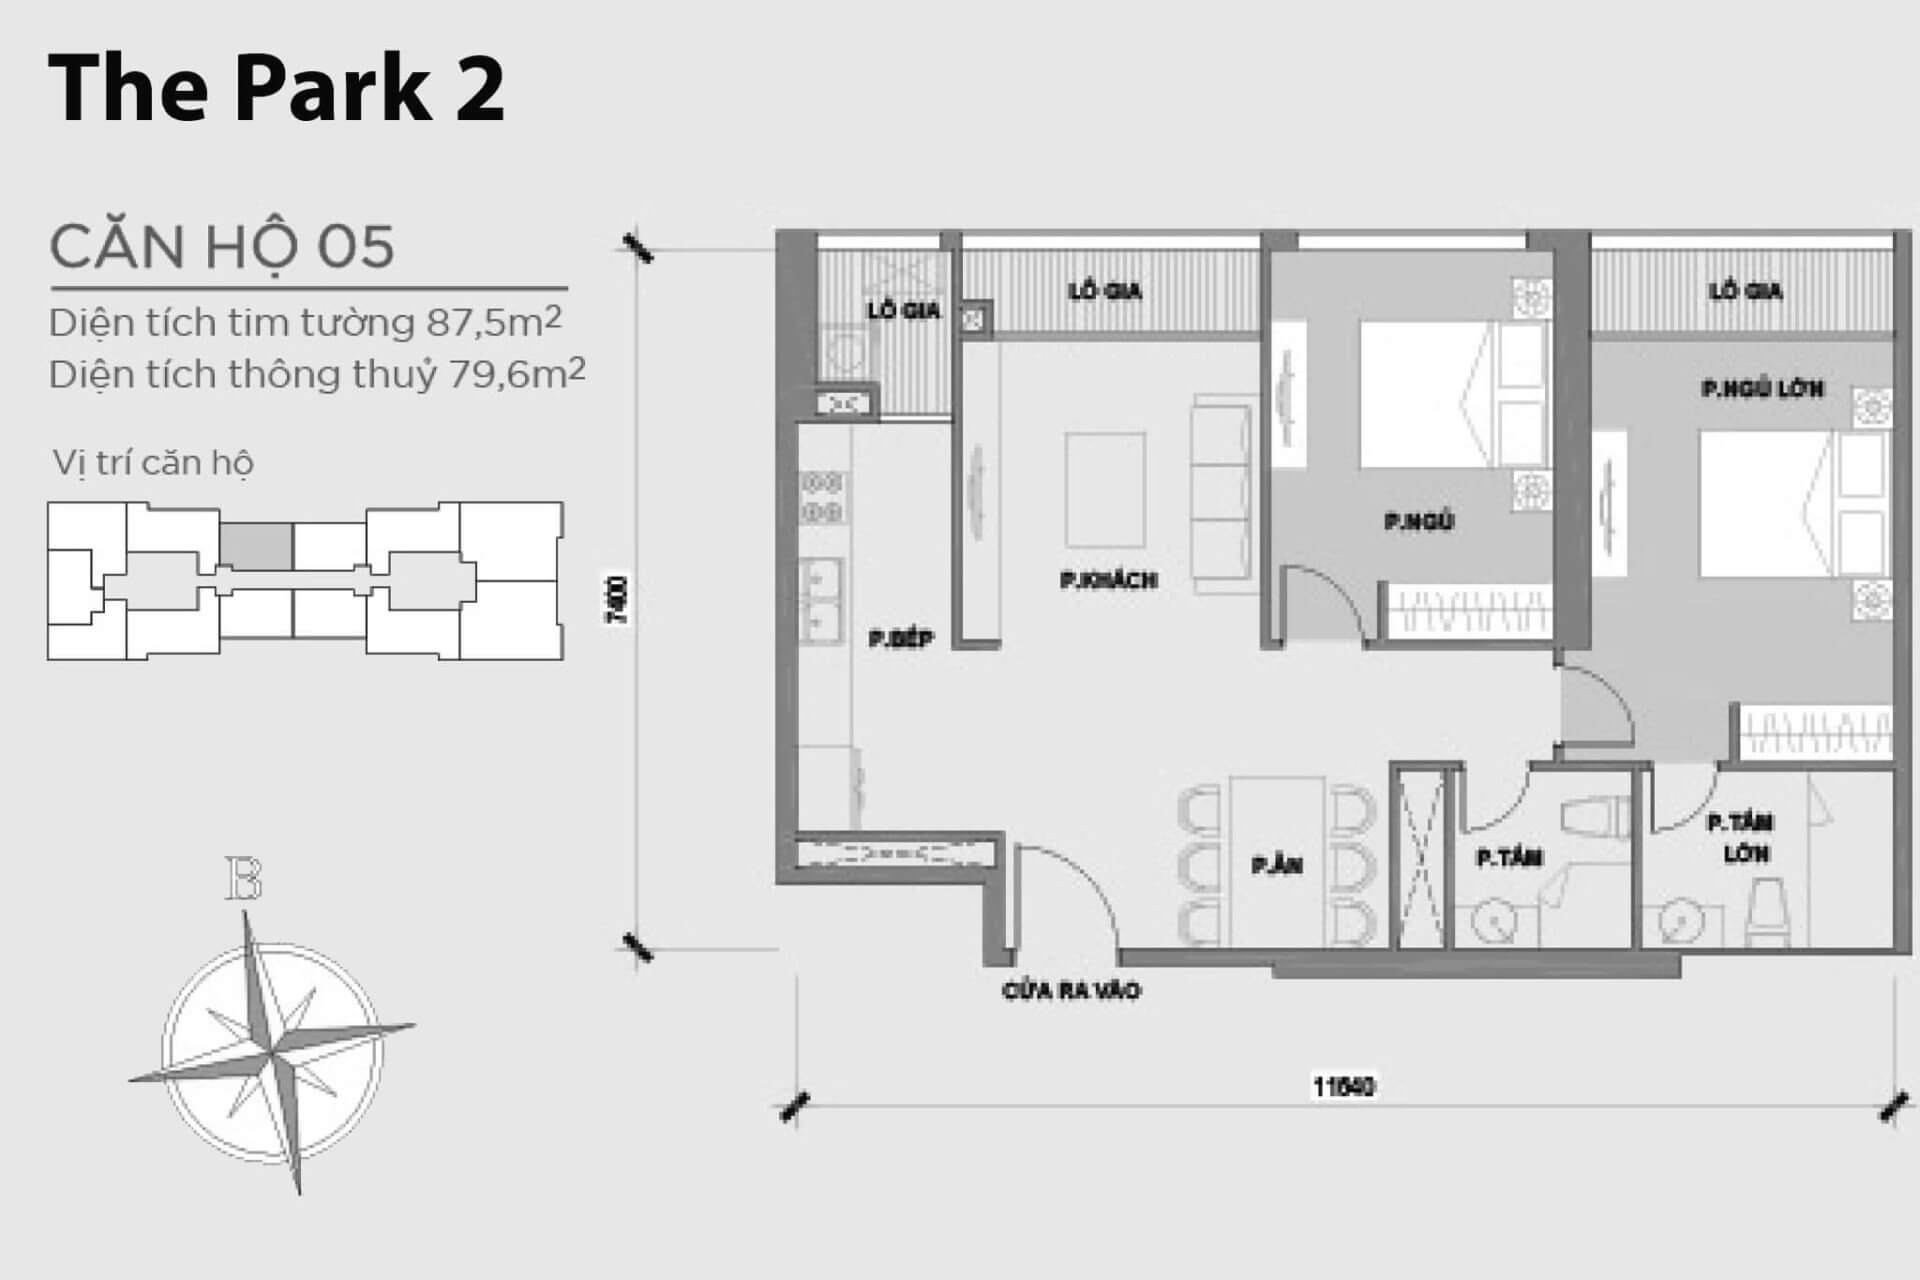 mặt bằng layout căn hộ số 05 Park 2 Vinhomes Central Park